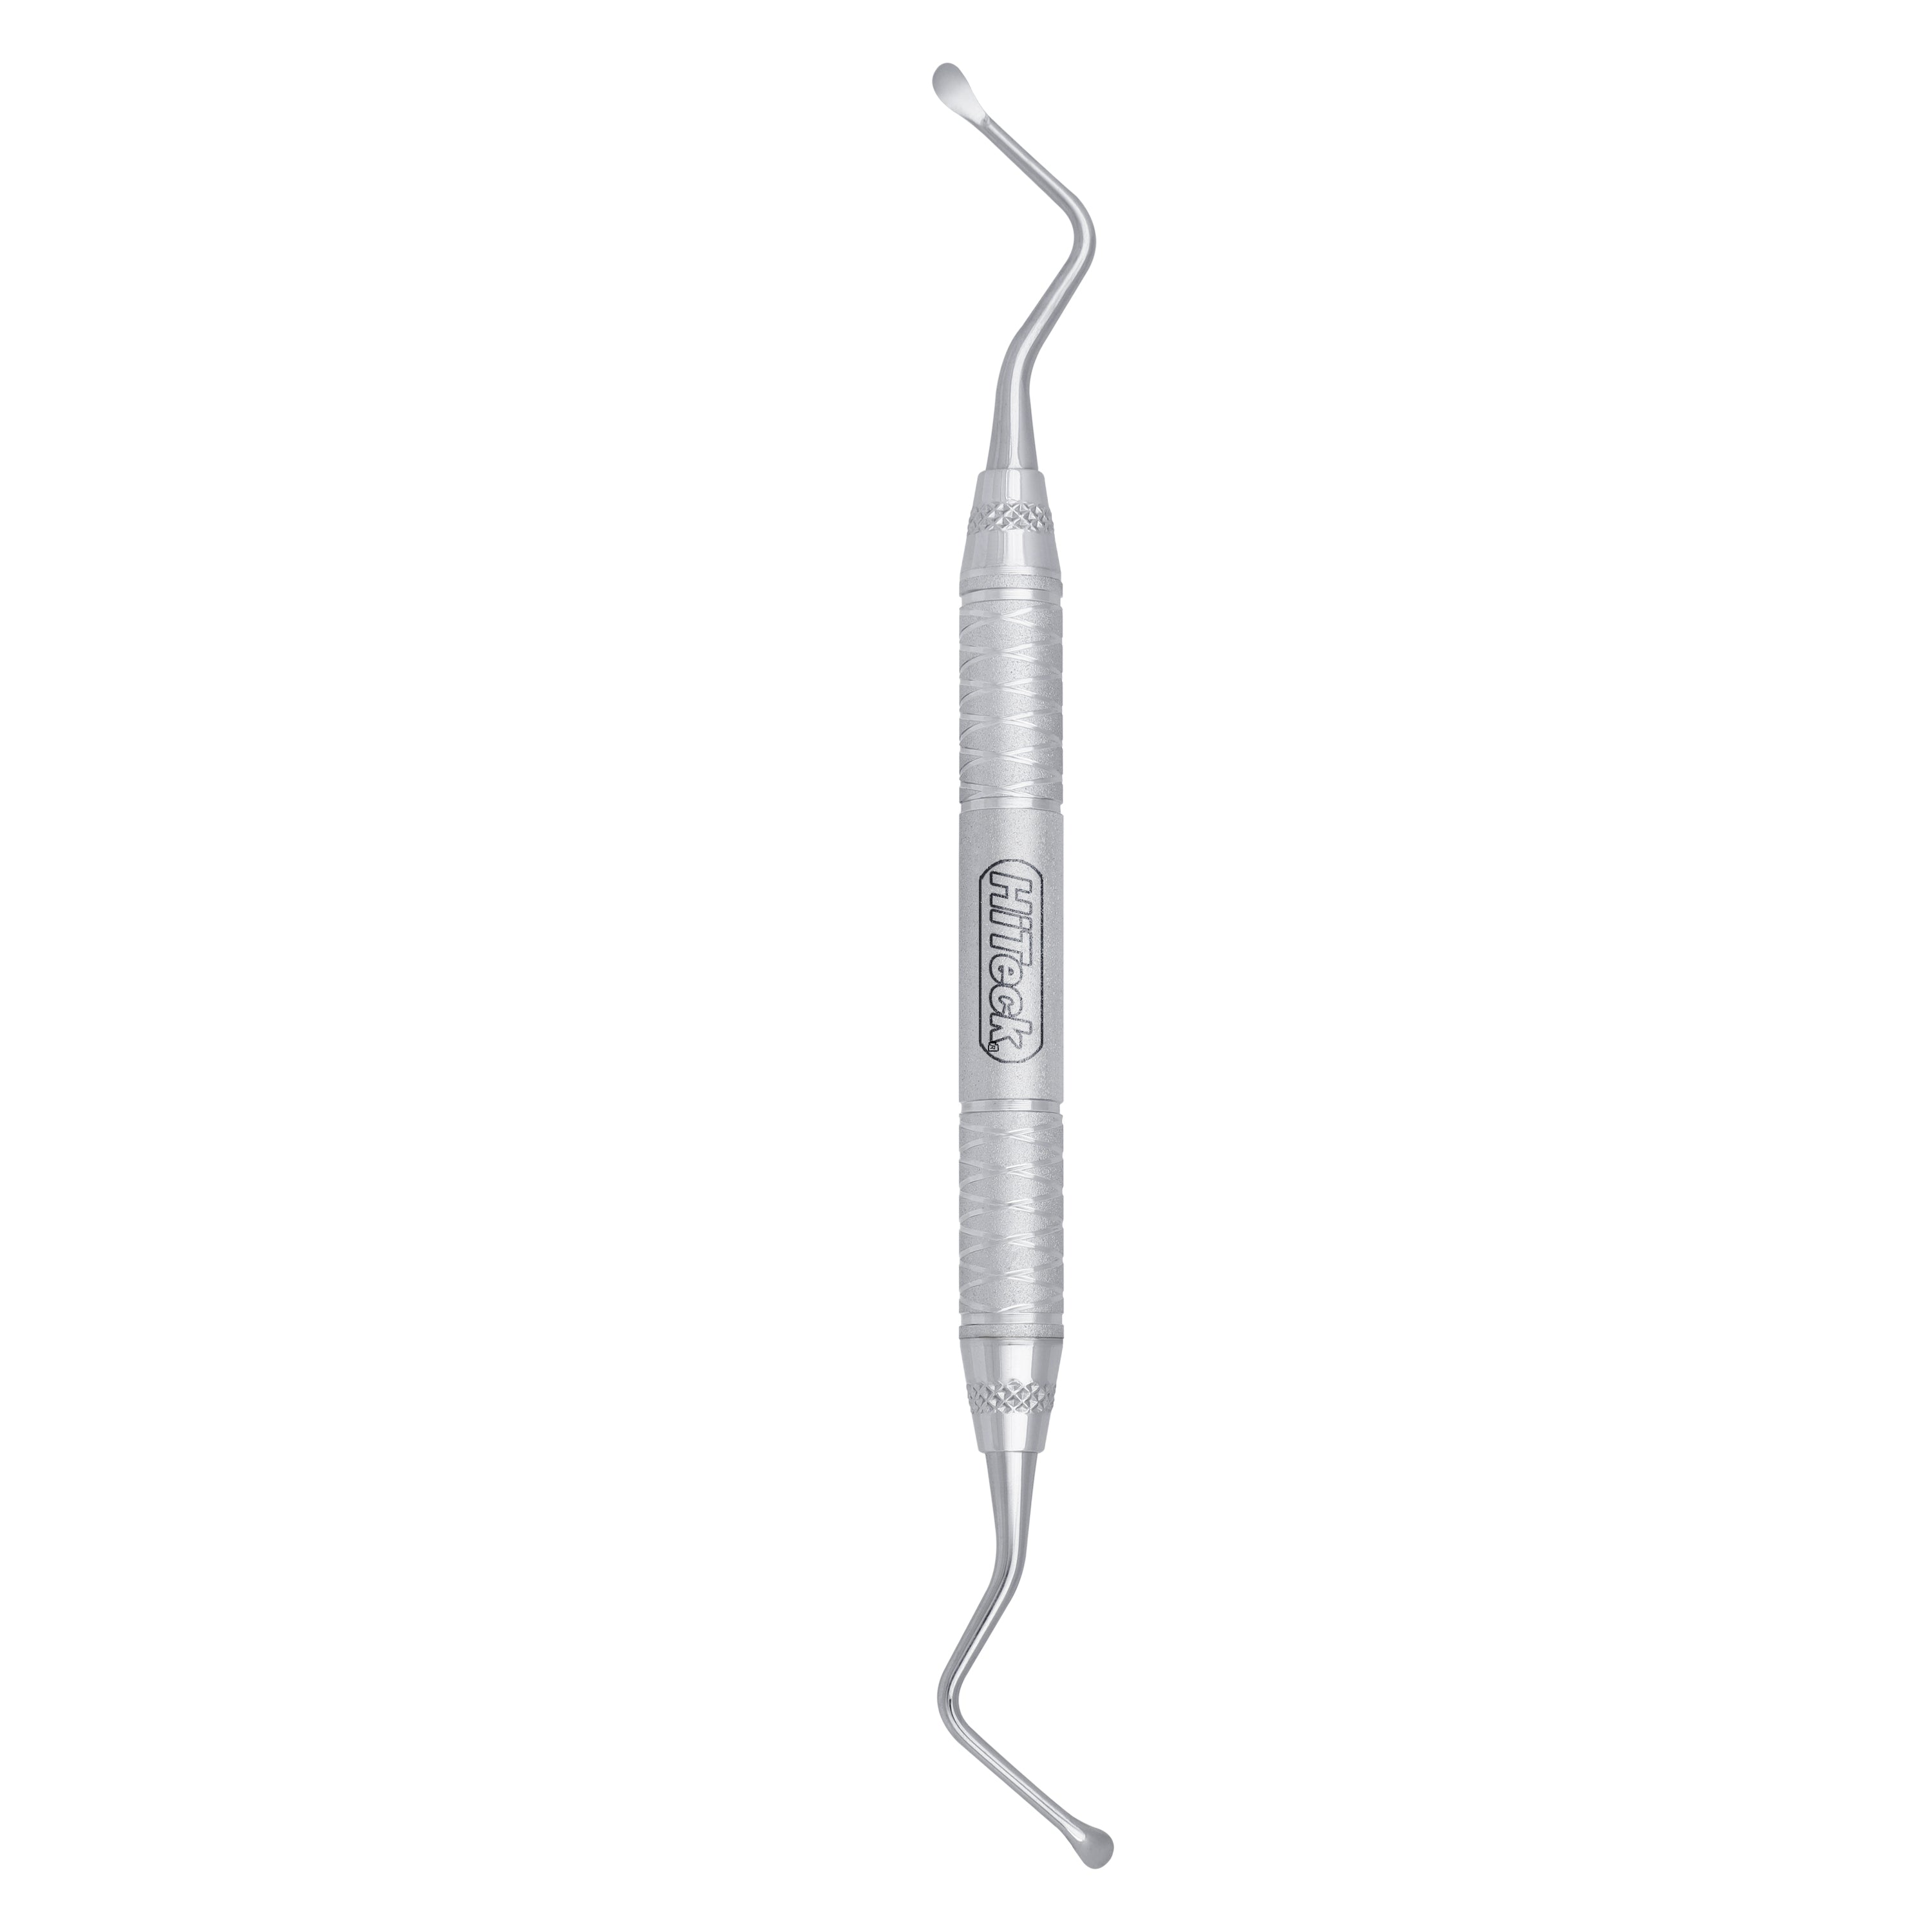 87 Lucas Spoon Shape Surgical Curette, 3.5MM - HiTeck Medical Instruments